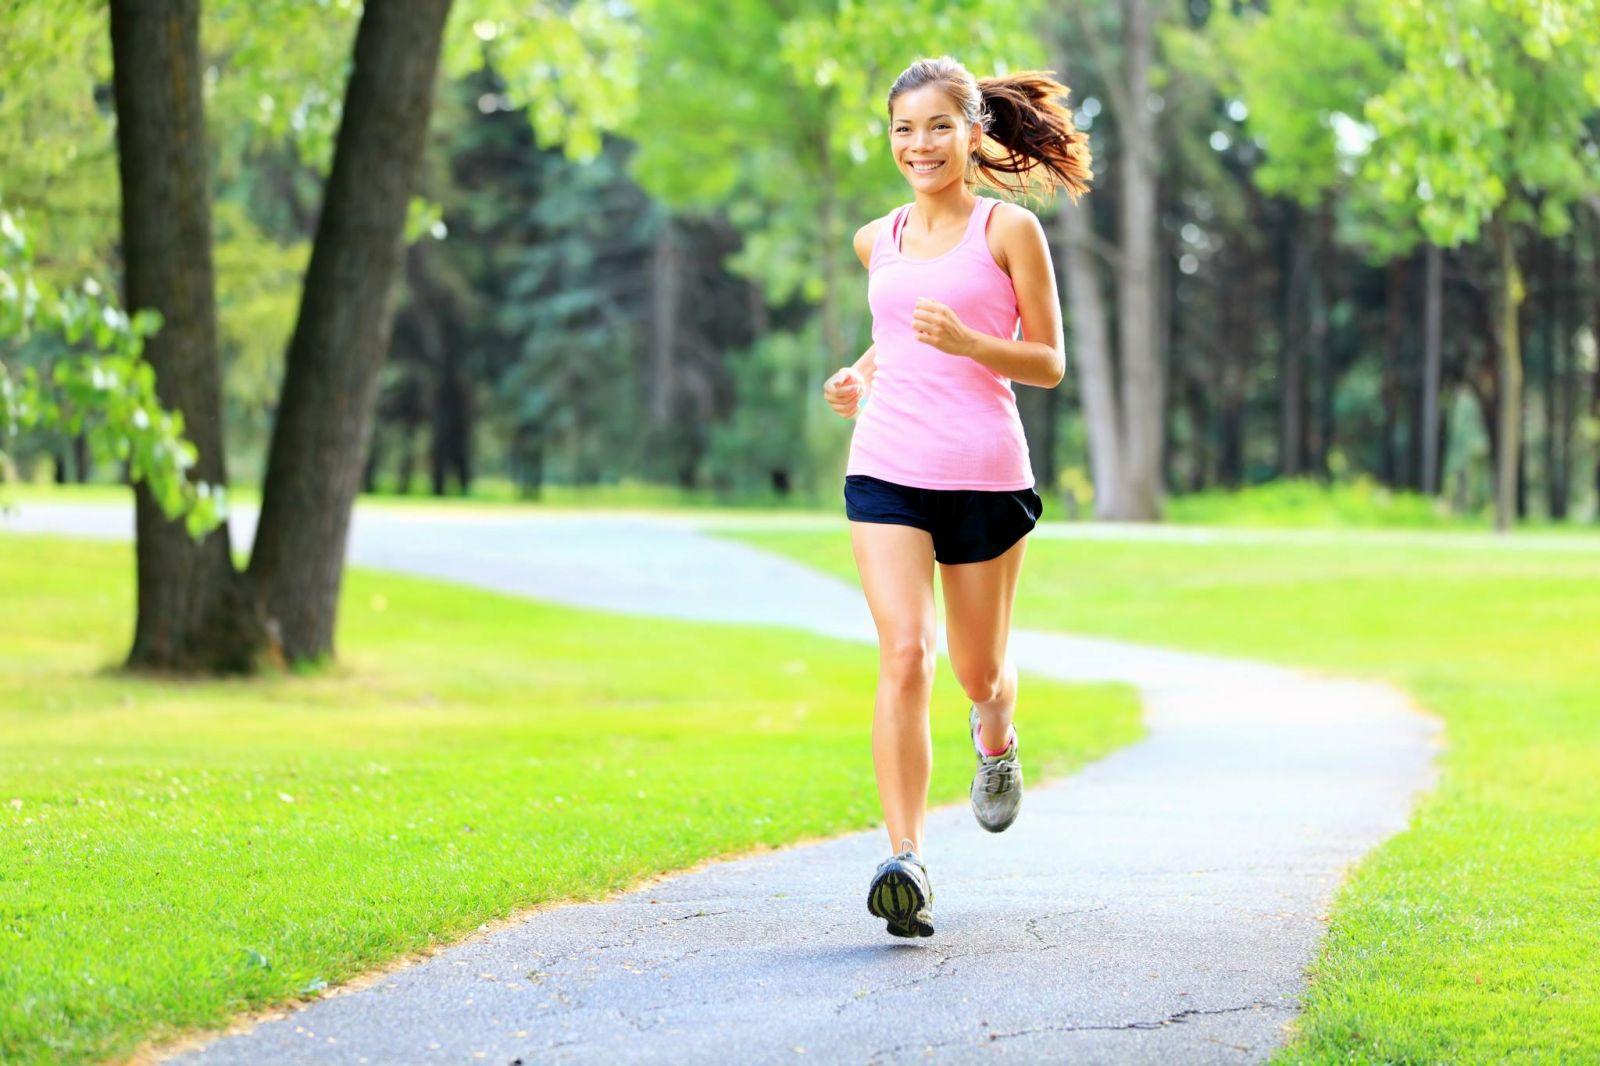 hoạt động chạy bộ thậm chí không làm ảnh hưởng đến các mô xương khớp như khớp gối